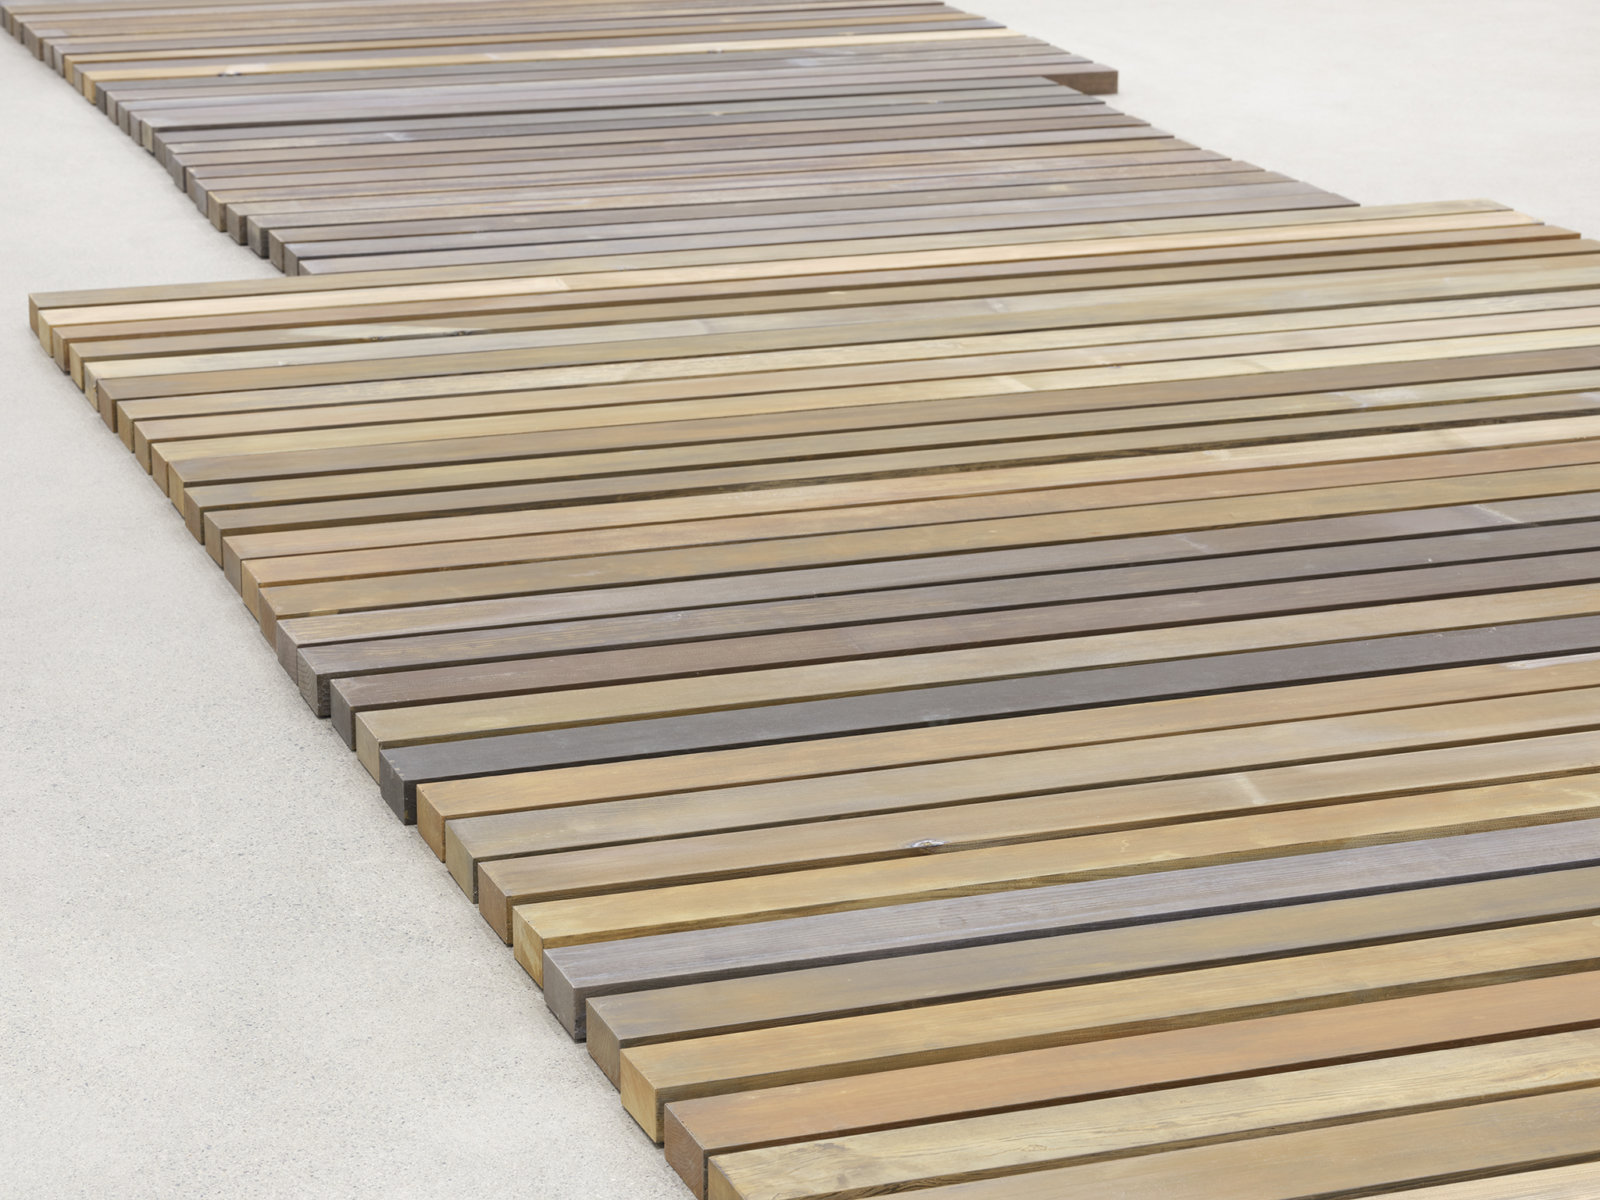 Geoffrey Farmer, 70 Planks (detail), 2021, acid-etched brass planks, 3 x 100 x 321 in. (6 x 253 x 815 cm)